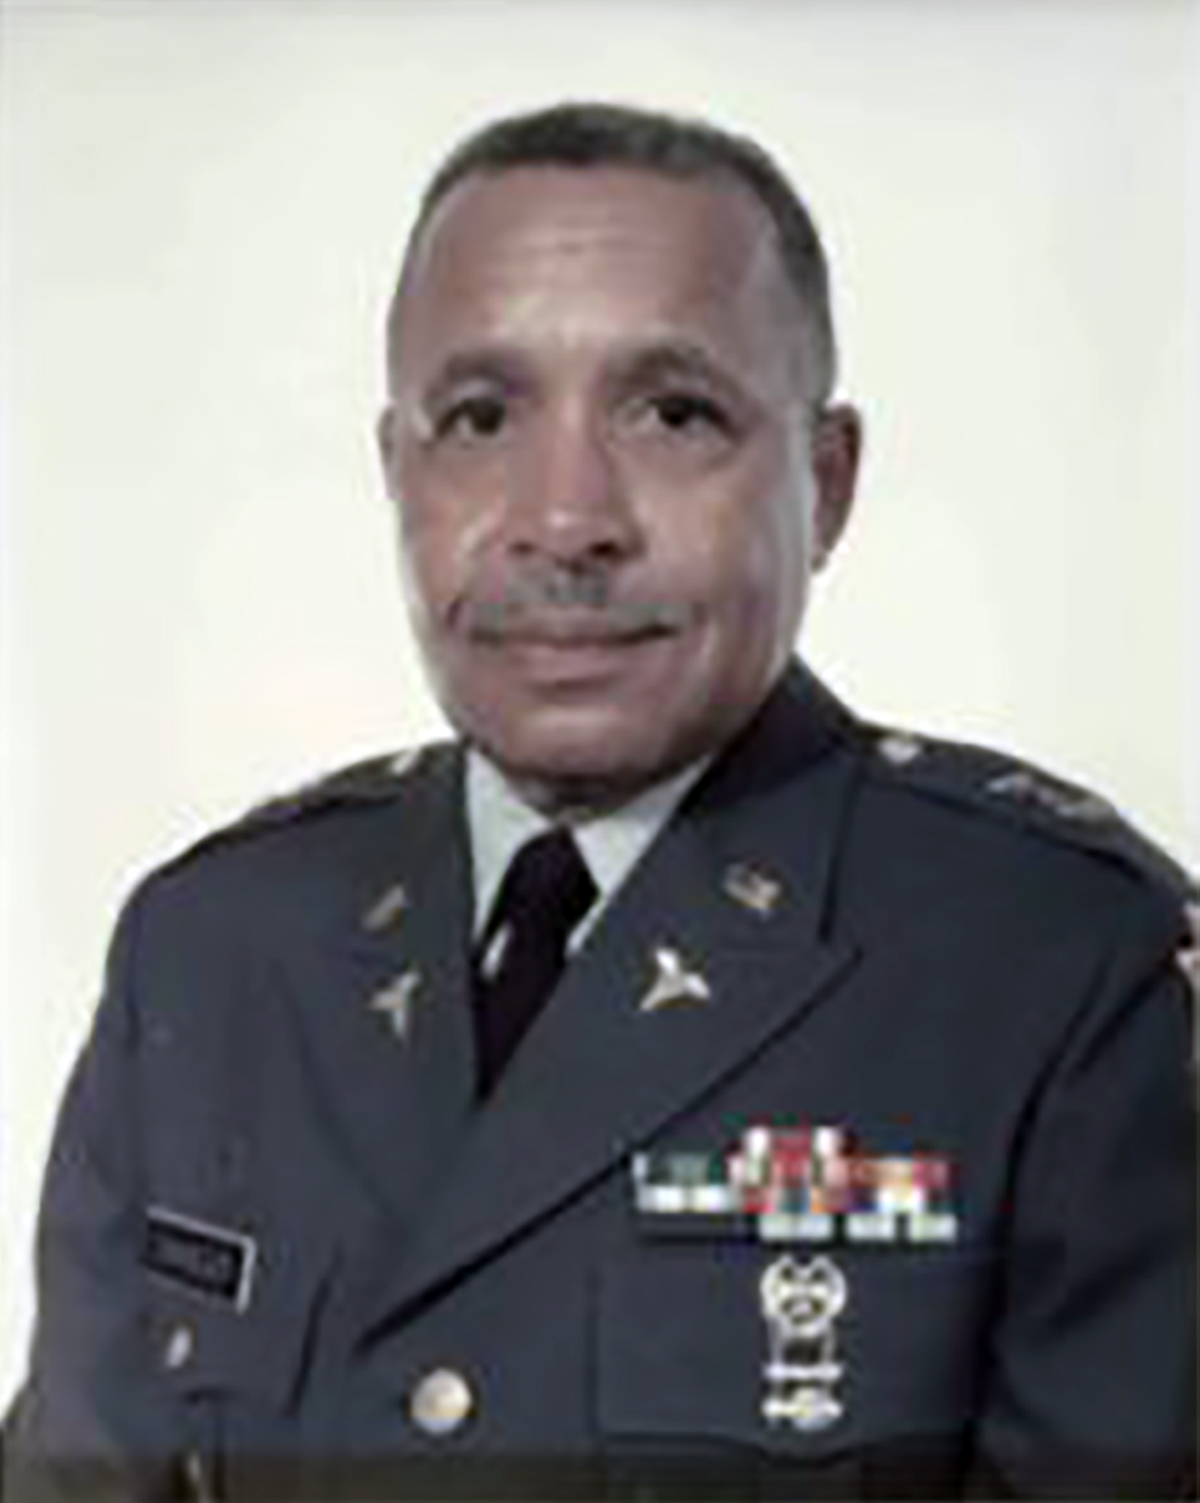 LTG (Retired) Allen E. Chandler